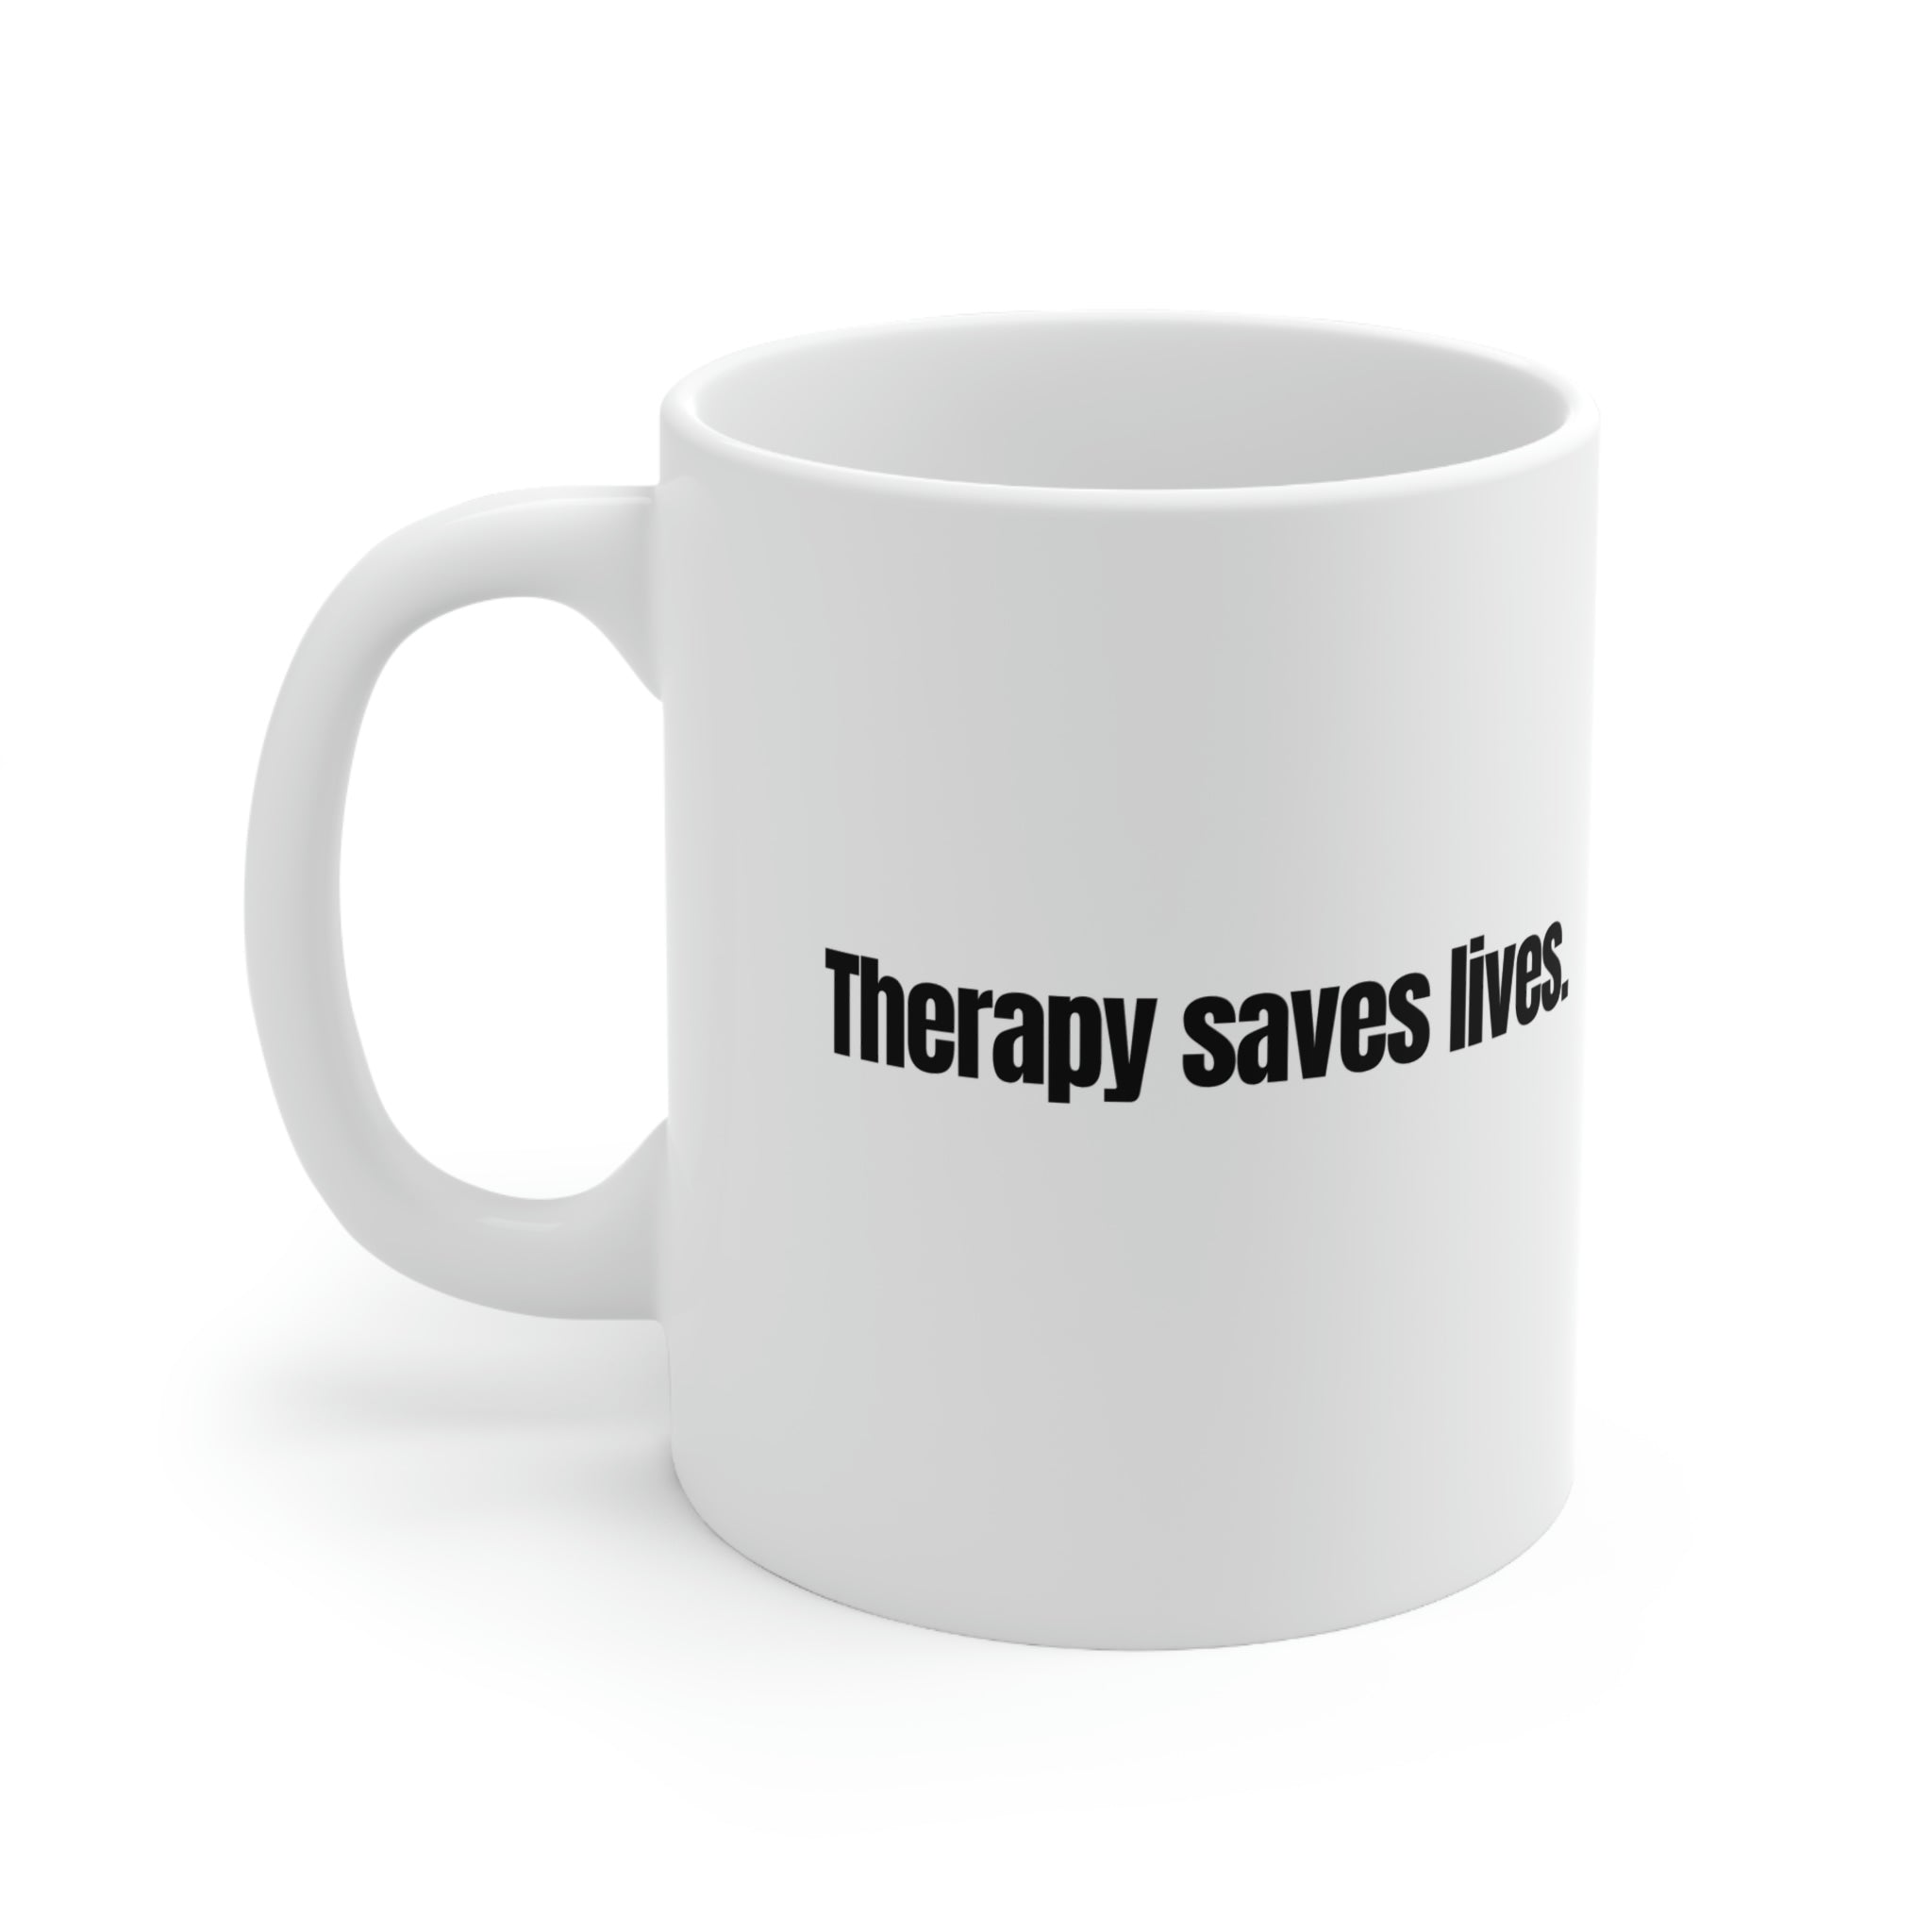 Therapy Saves Lives Ceramic Mug 11oz